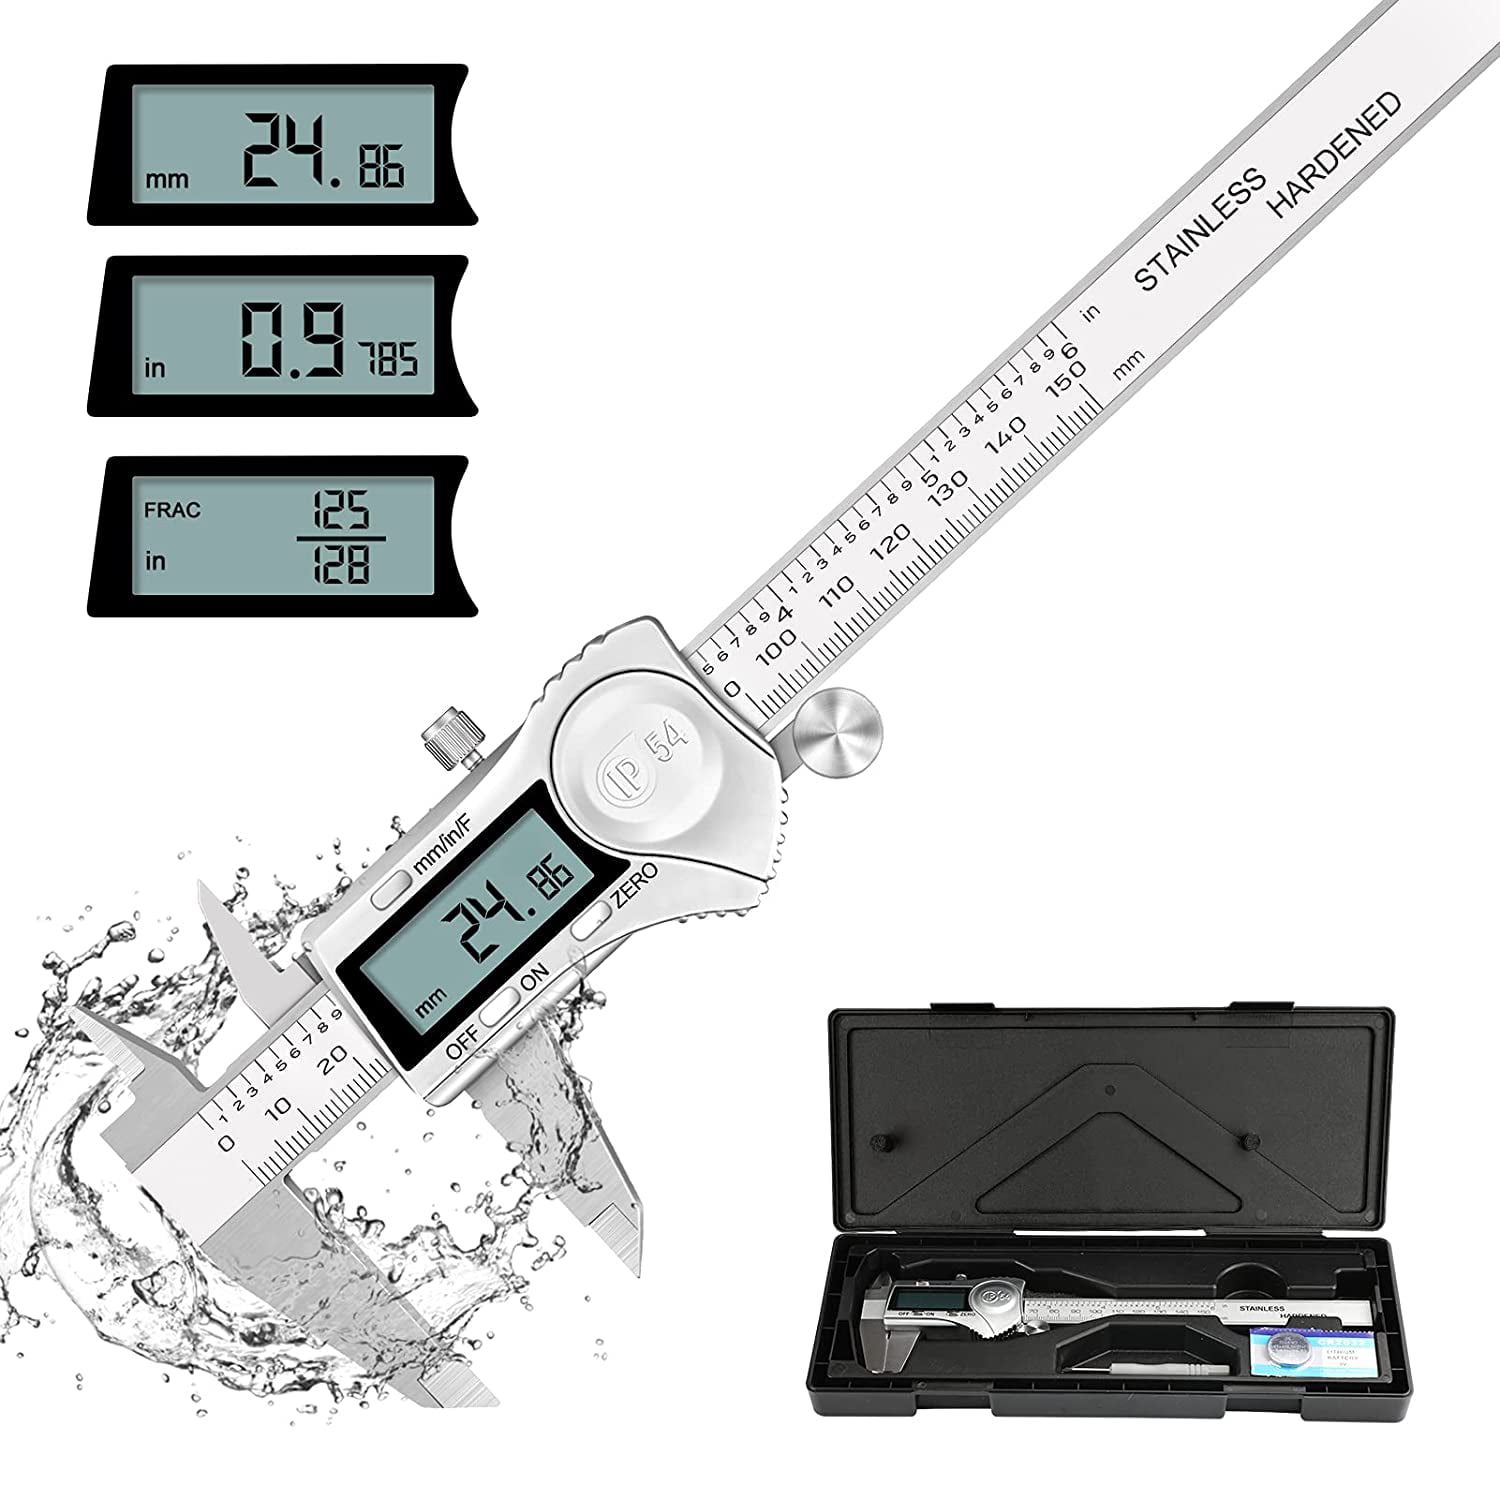 150mm stainless steel IP54 LCD Digital Vernier Caliper Micrometer Measuring Tool 